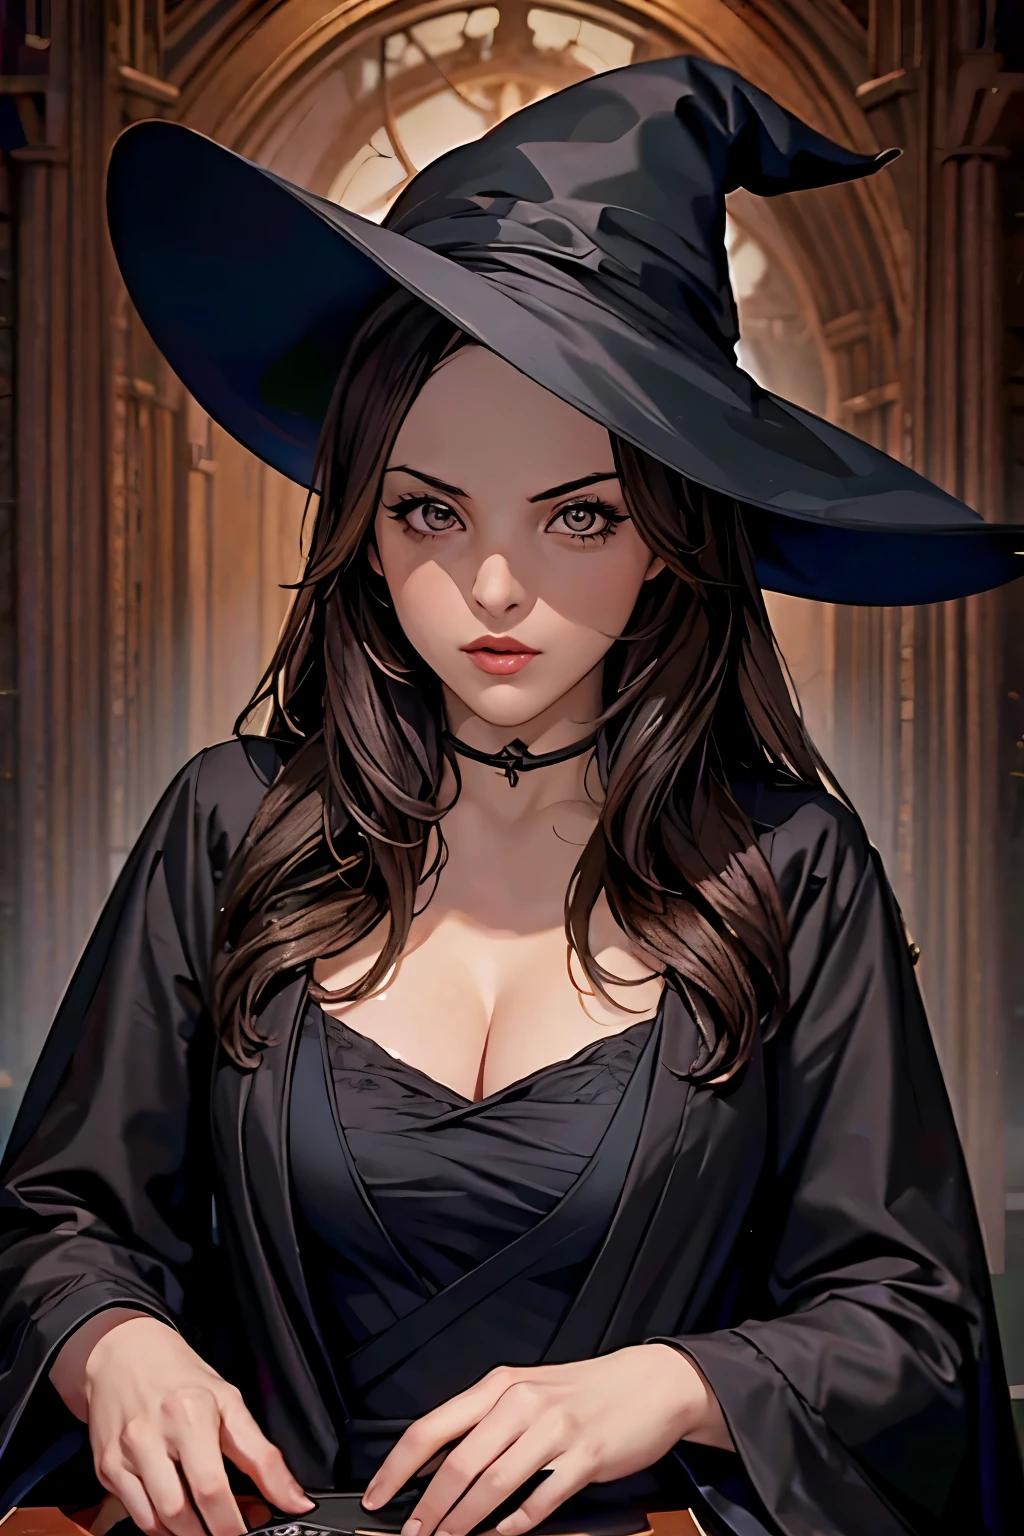 伊莉莎白·吉利斯, 深棕色頭髮, 黑色女巫帽, 黑袍, 半上半下, 看著相機, (最高品質的高分辨率), ((傑作 最佳品質:1.2))